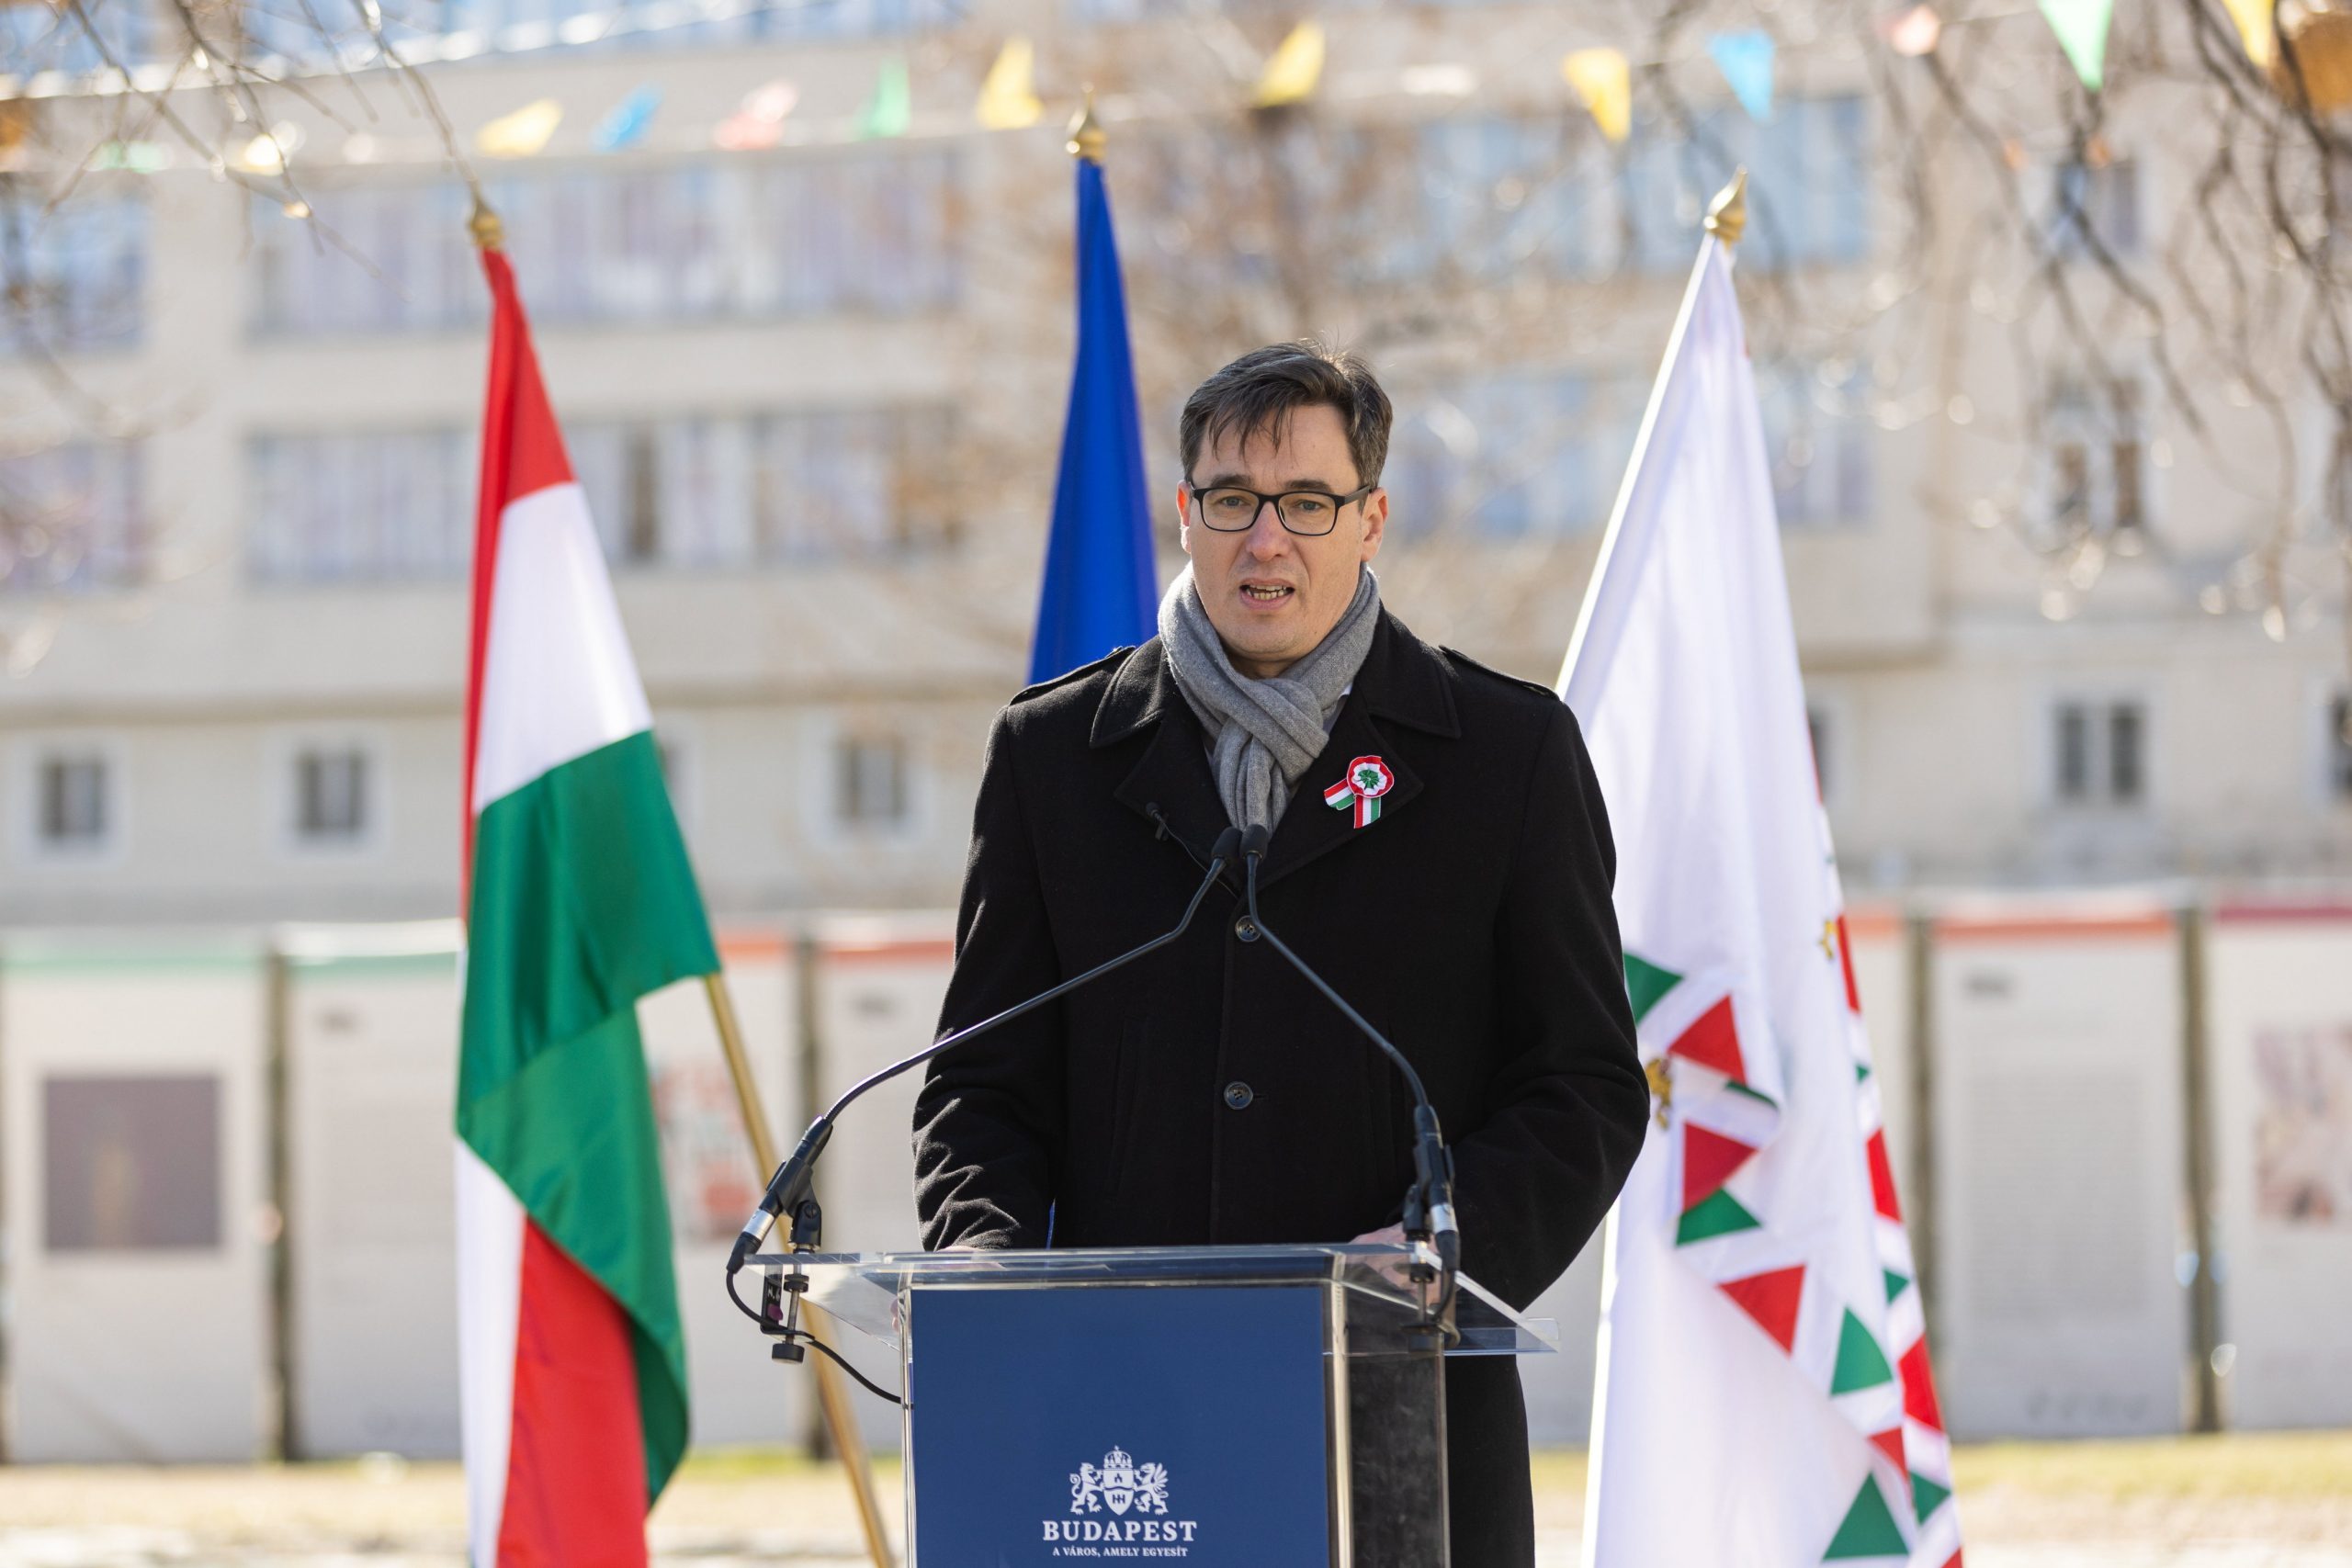 Ungarisch-polnischer Freundschaftstag: Bürgermeister von Budapest und Warschau feiern mit einem gemeinsamen Video